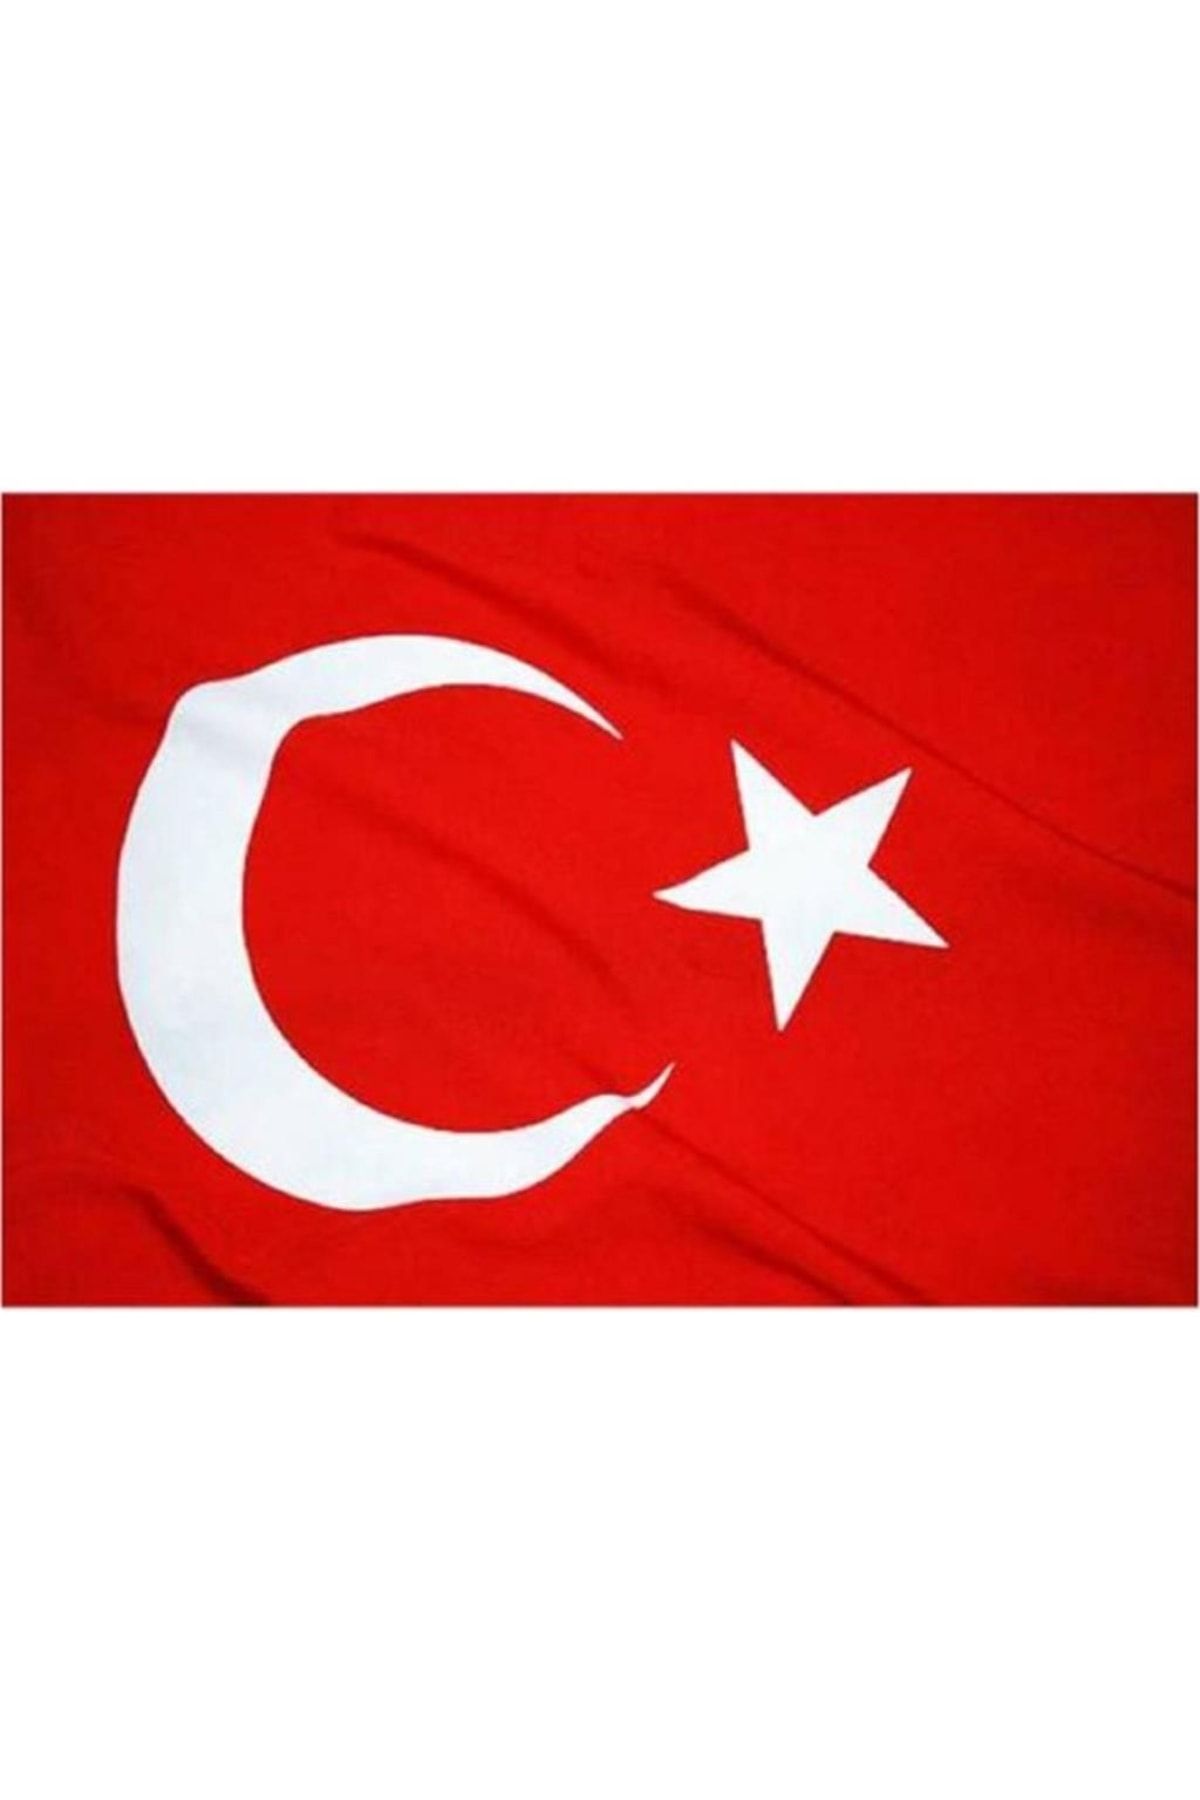 KALE Bayrak Türk Bayrağı 20 X 30 Cm 10'lu Paket